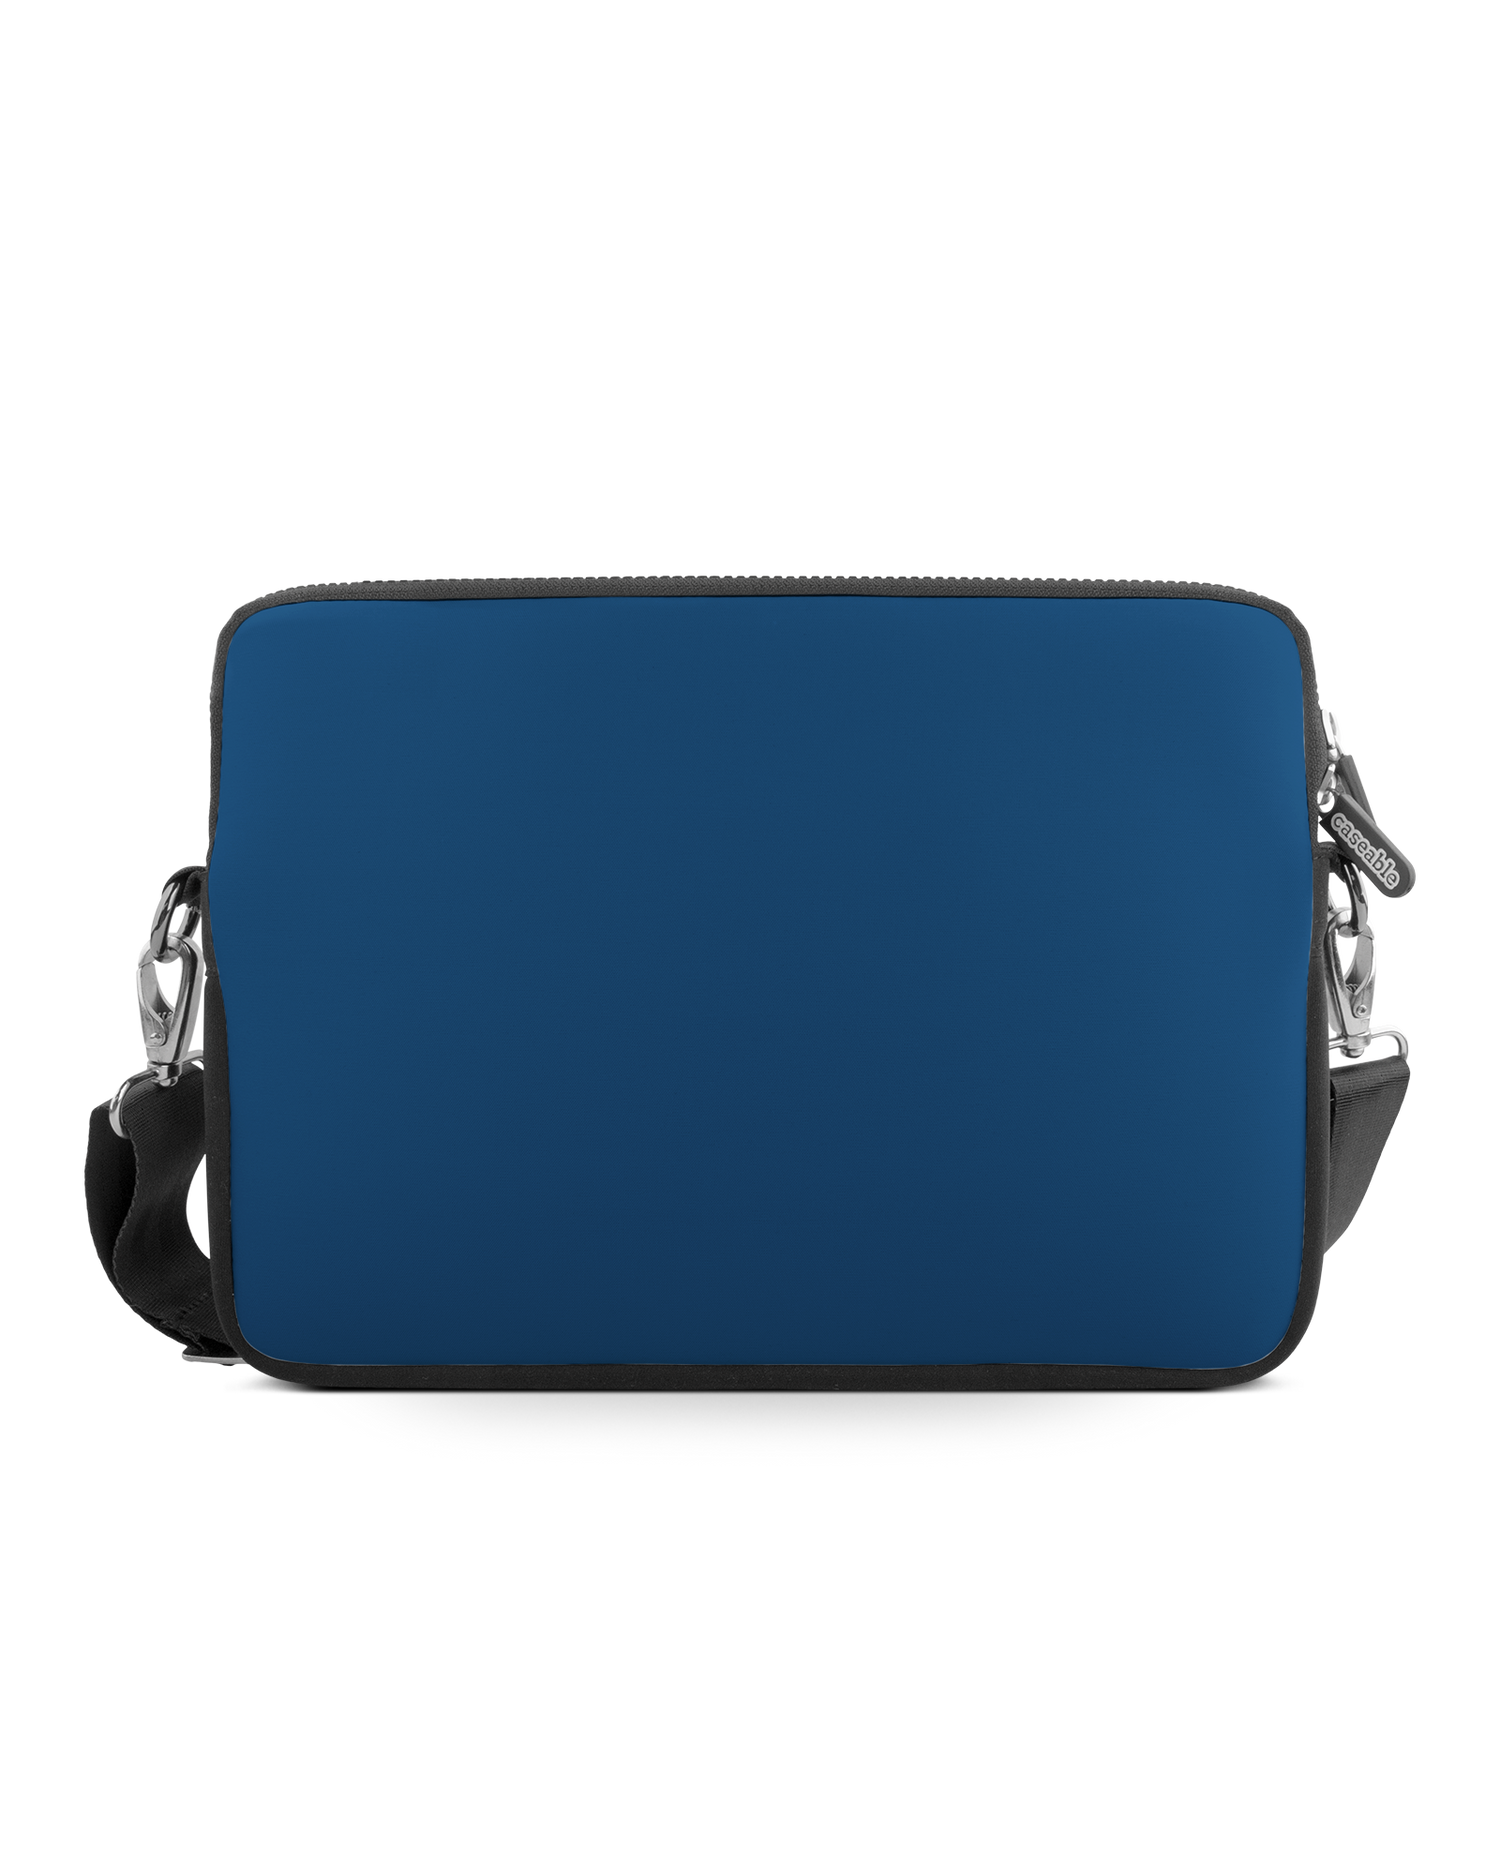 CLASSIC BLUE Premium Laptop Bag 13 inch: Front View